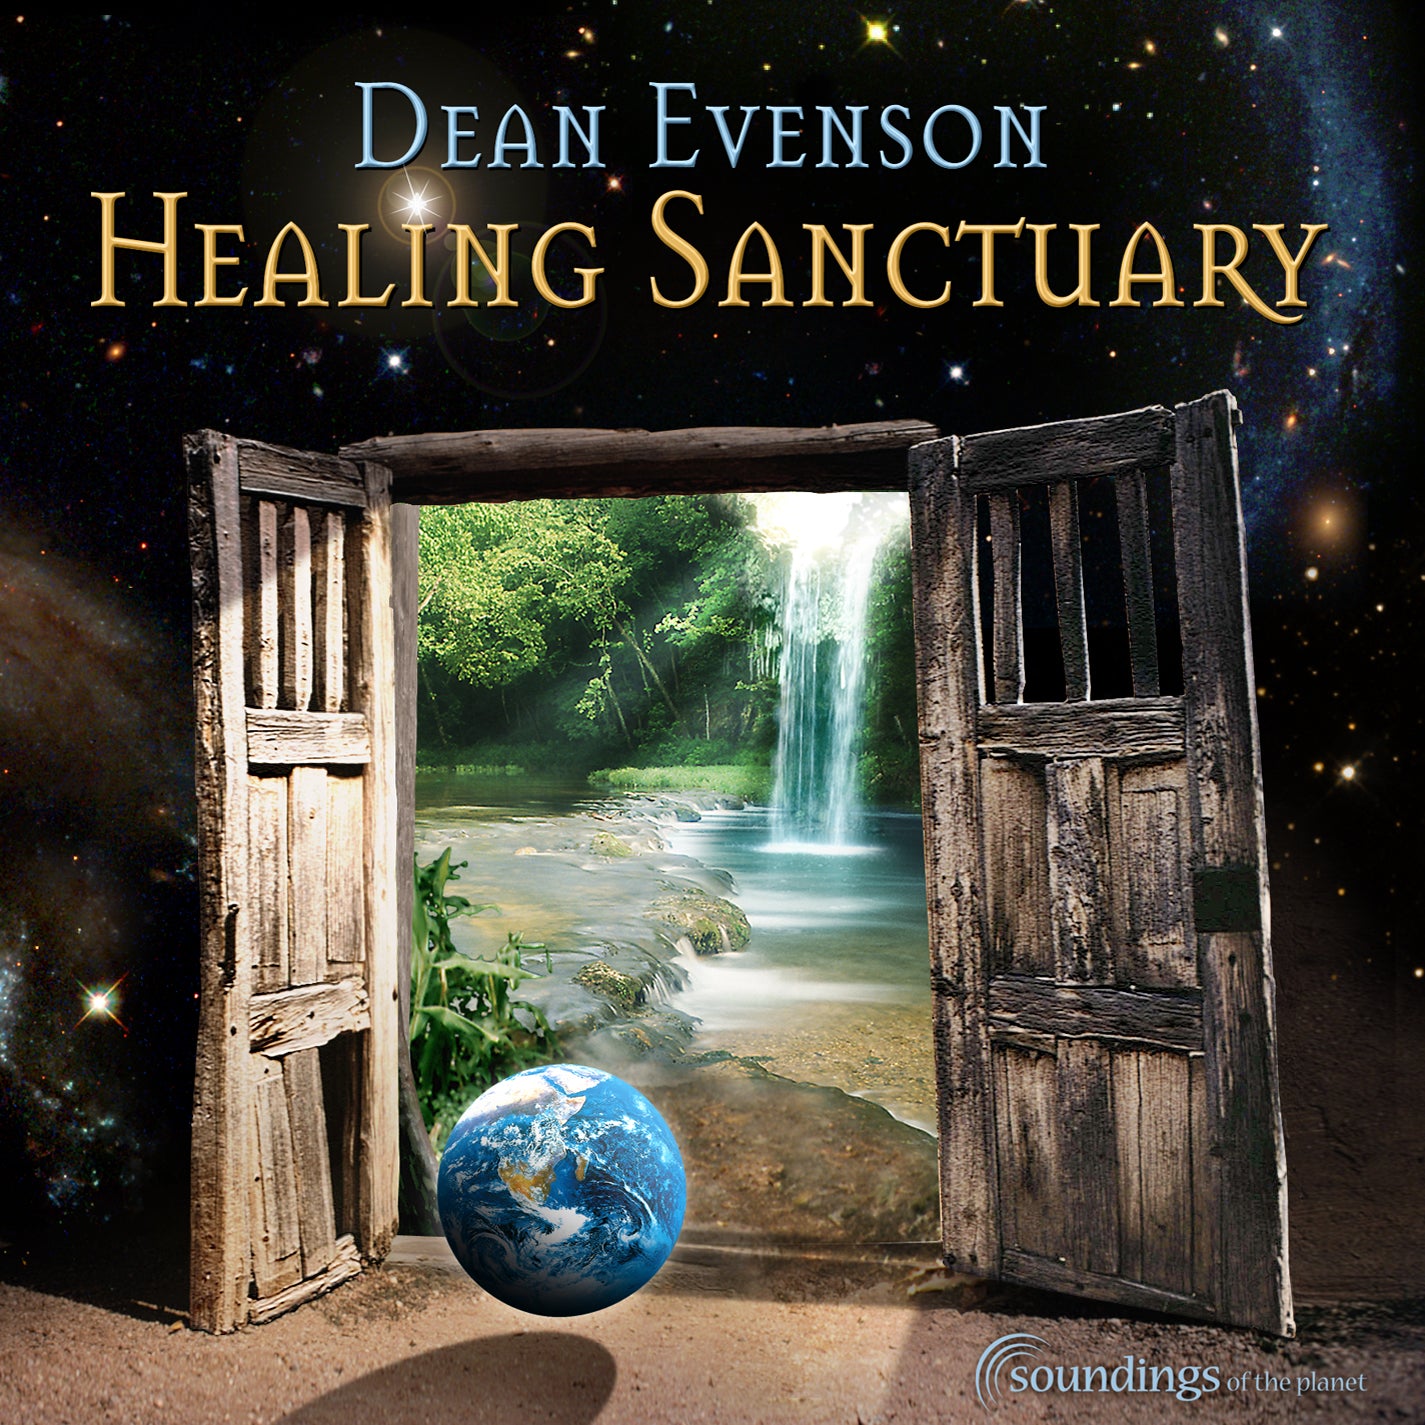 Healing Sanctuary COVER Dean Evenson art by Bob Paltrow altt